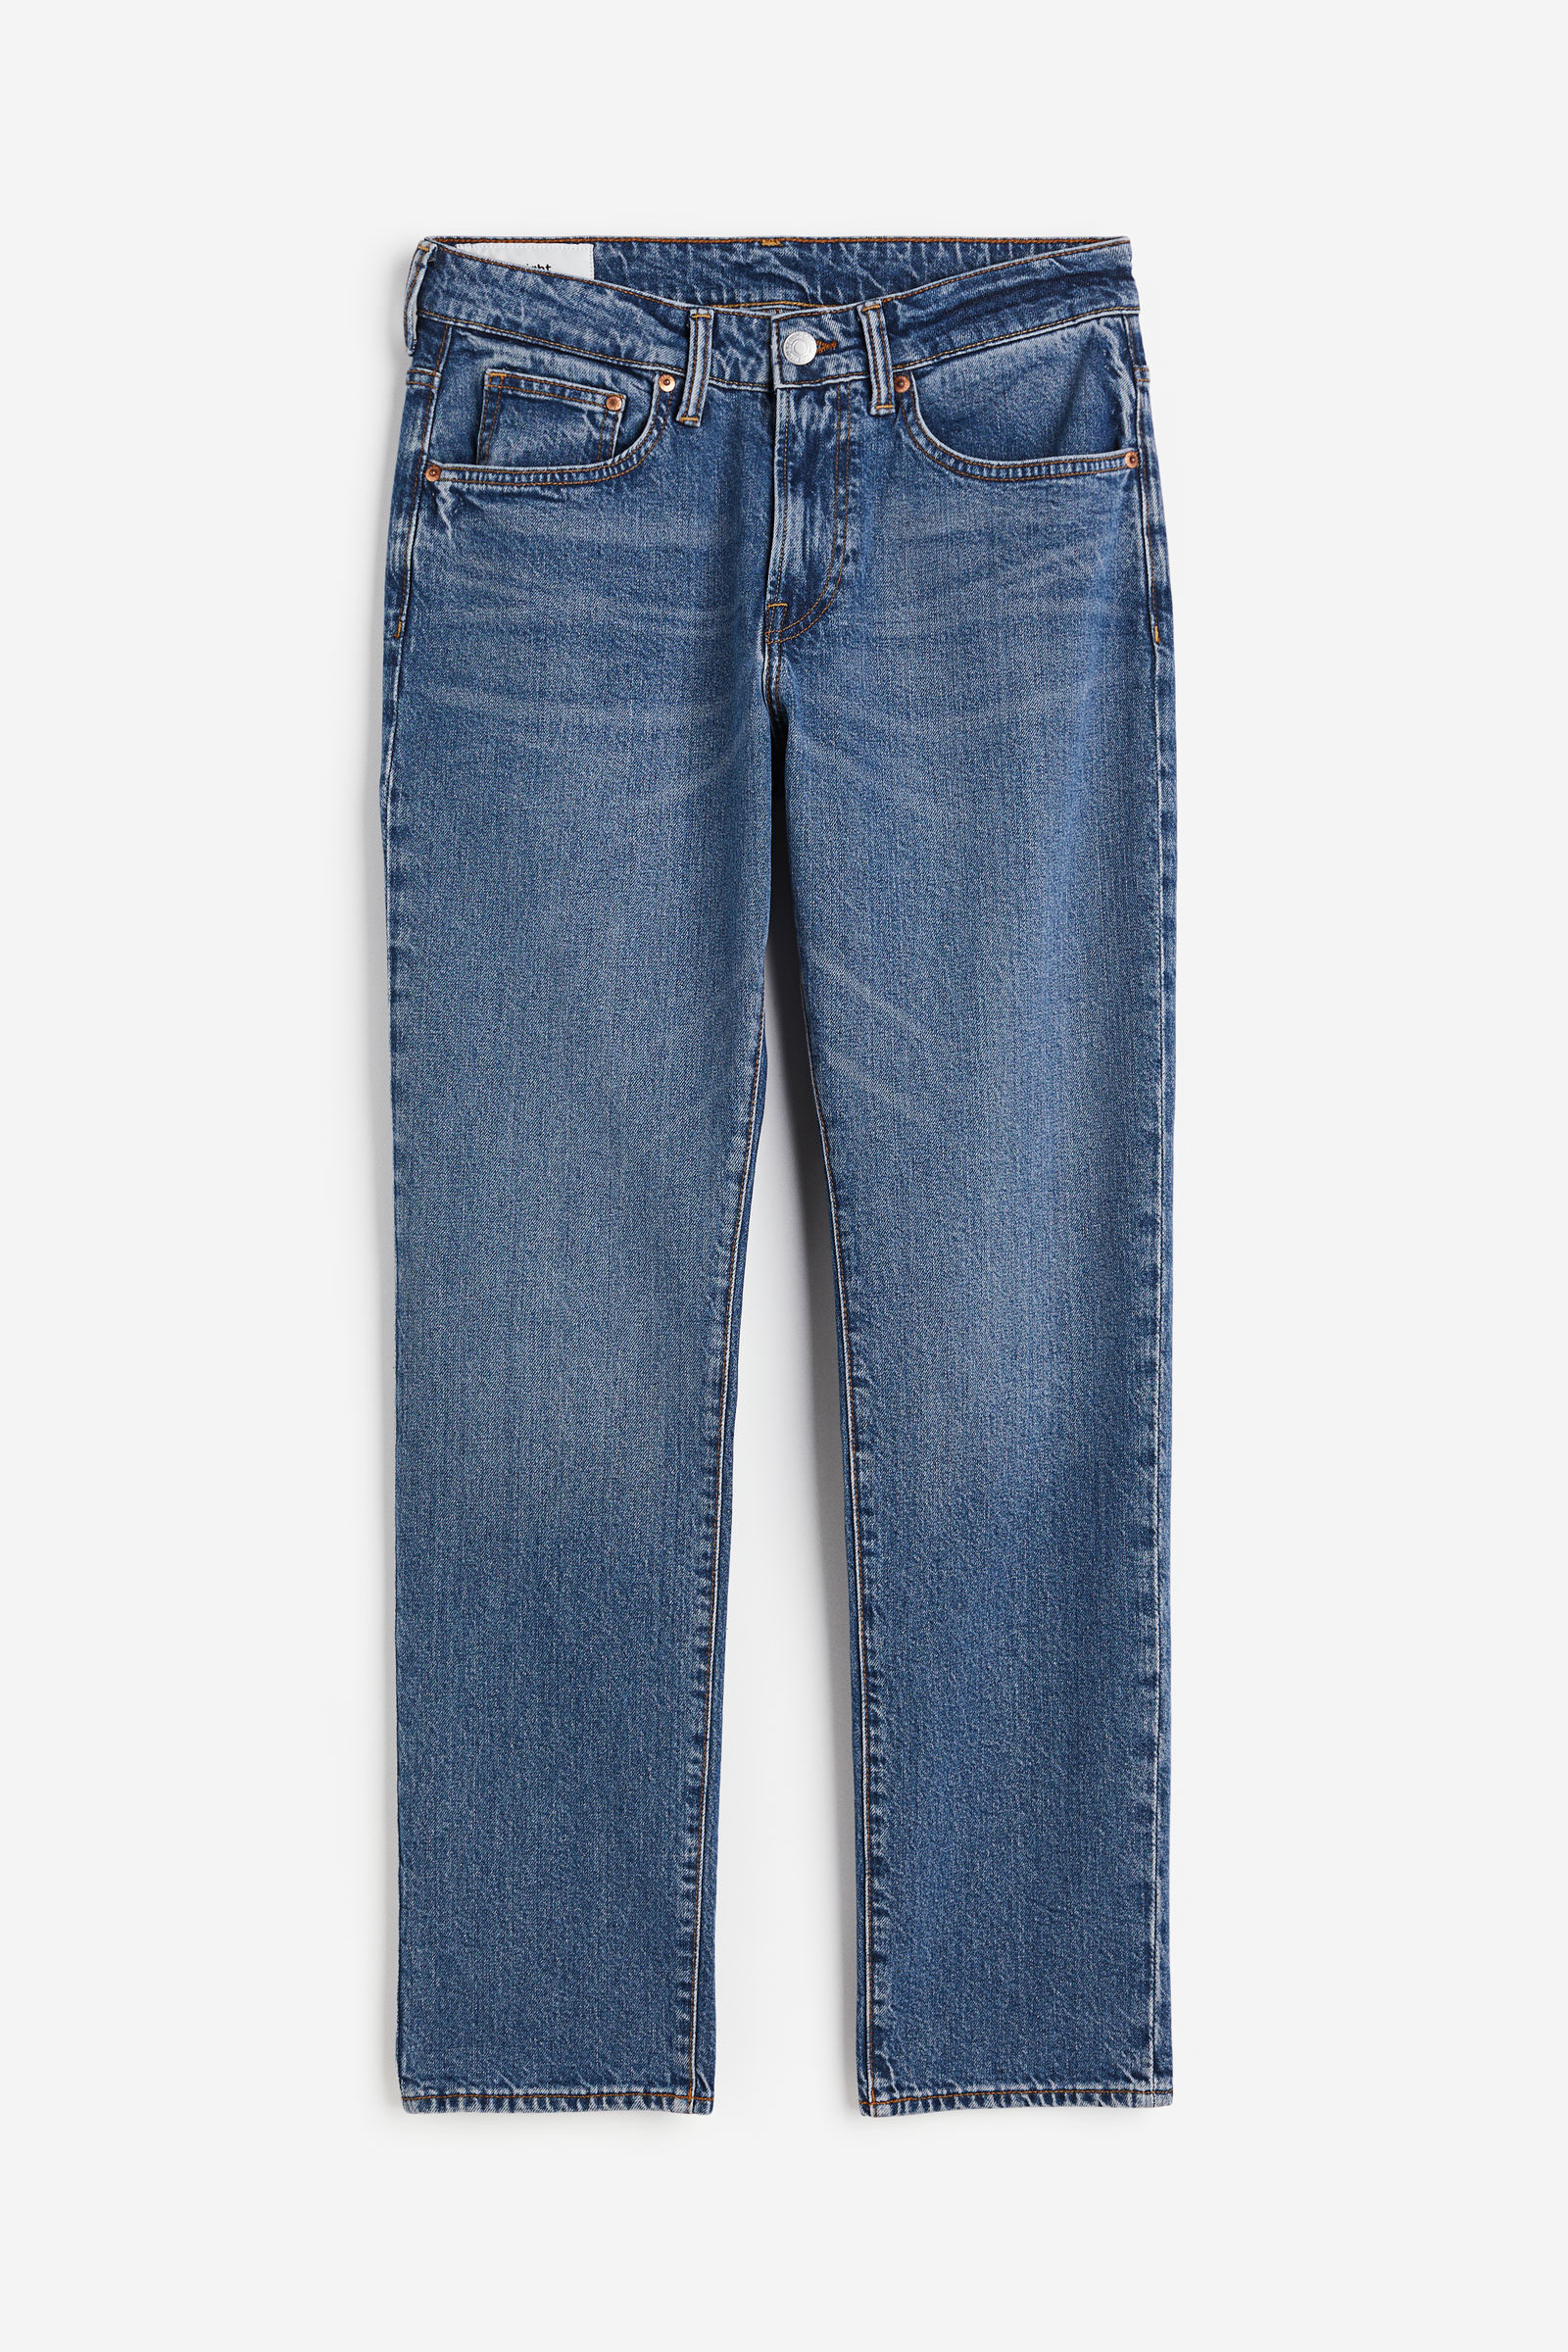 Jeans de hombre perfectos para tu look - H&M CL